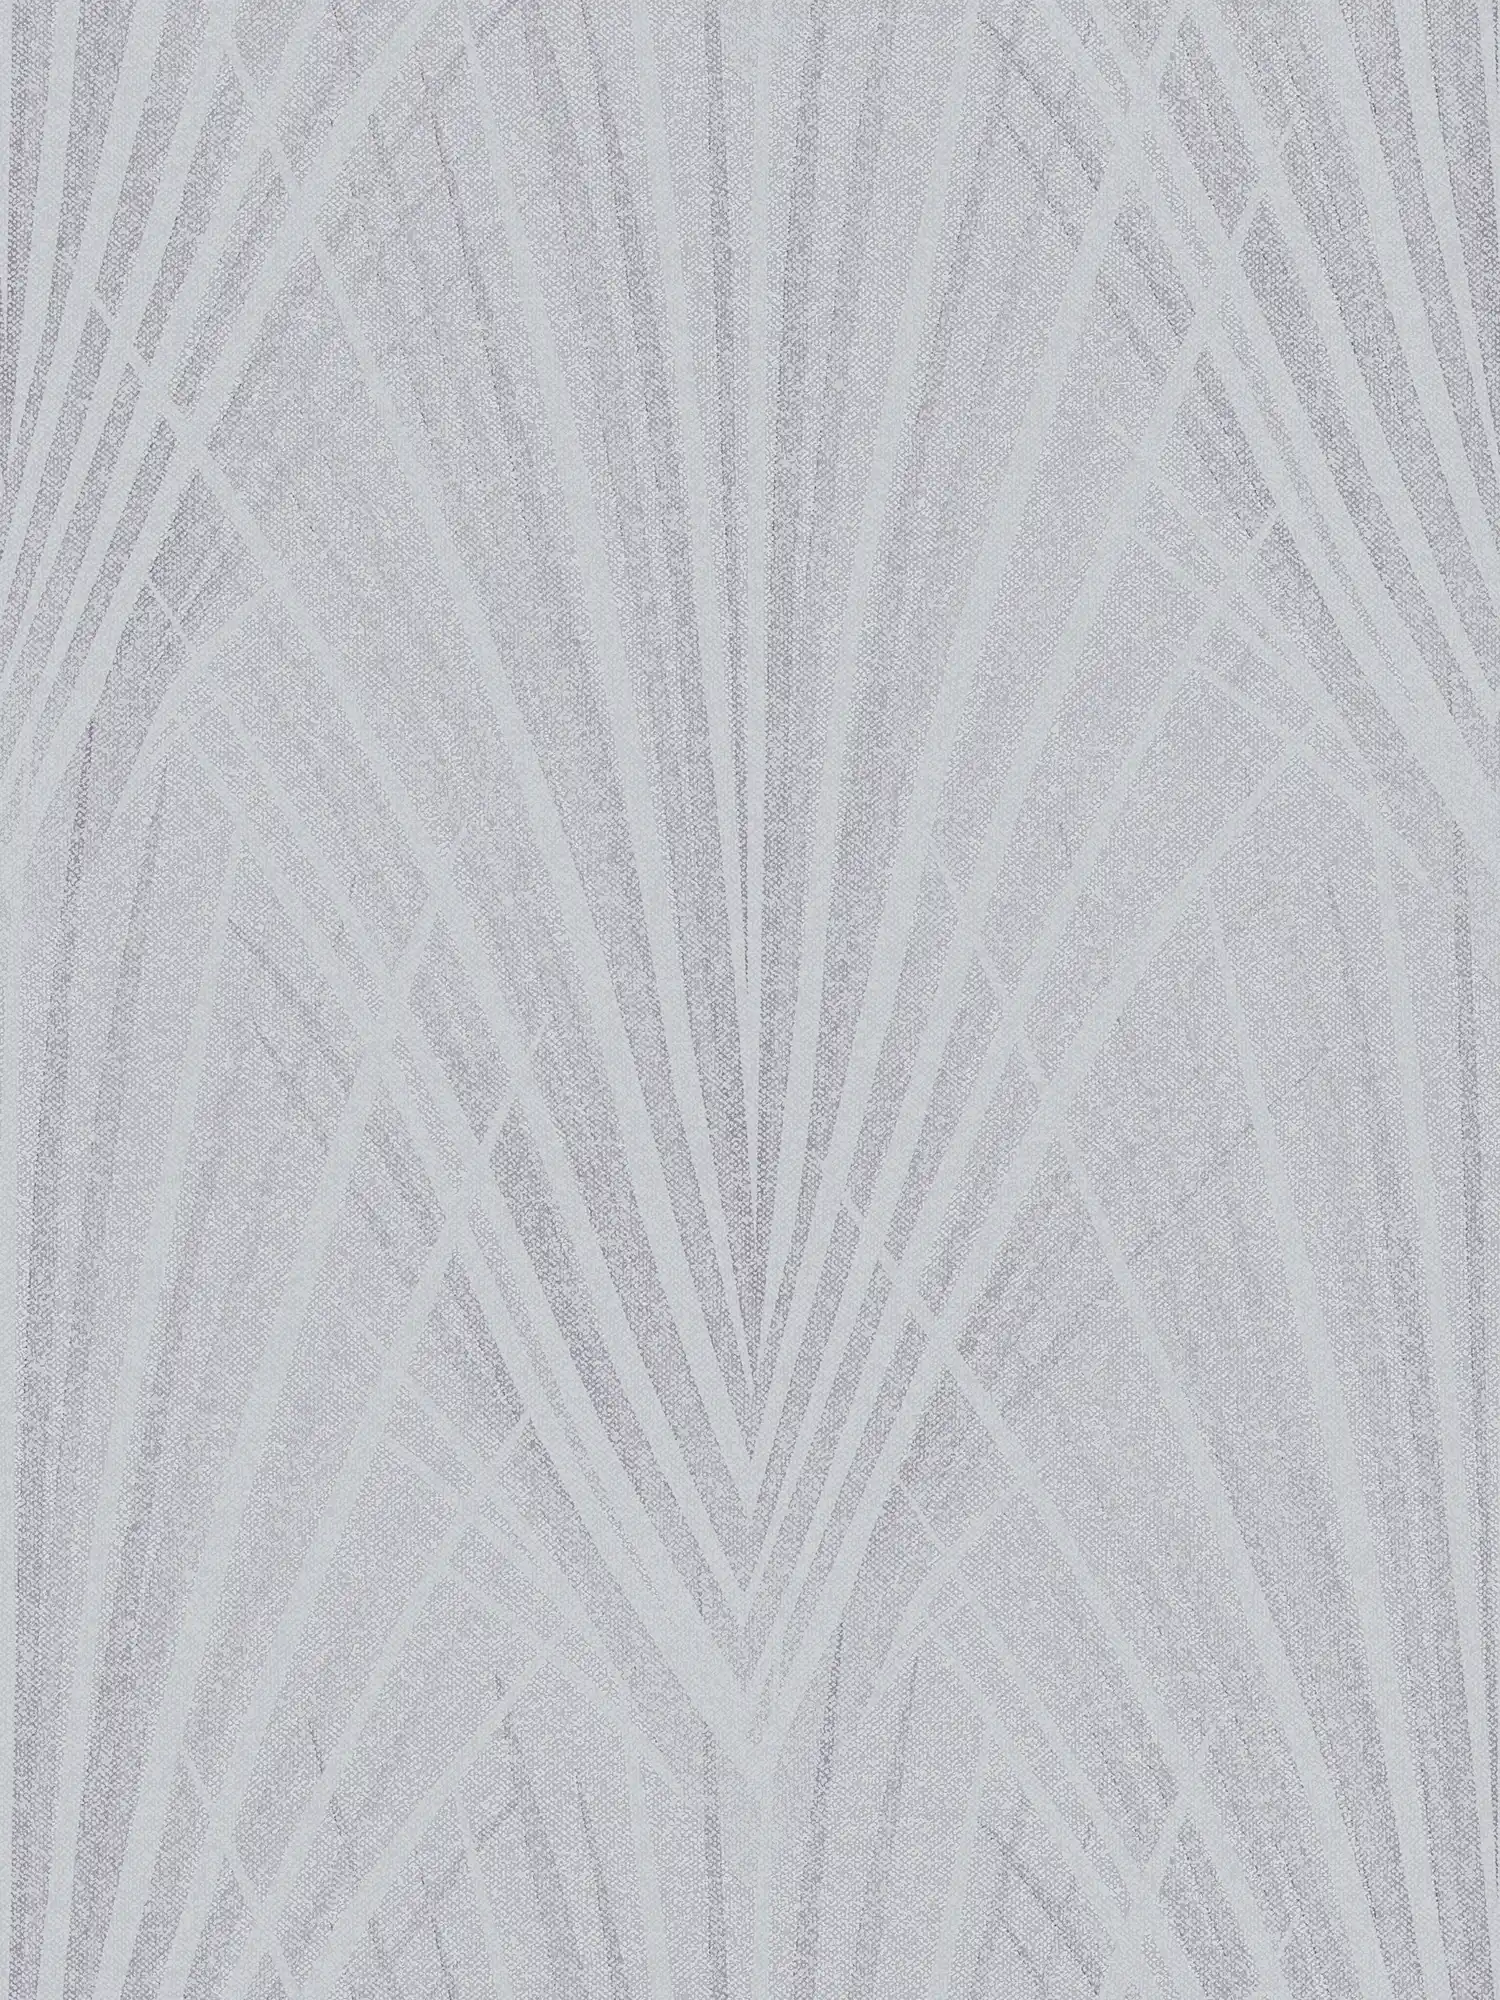 Vliesbehang varenbladpatroon abstract - blauw, grijs
